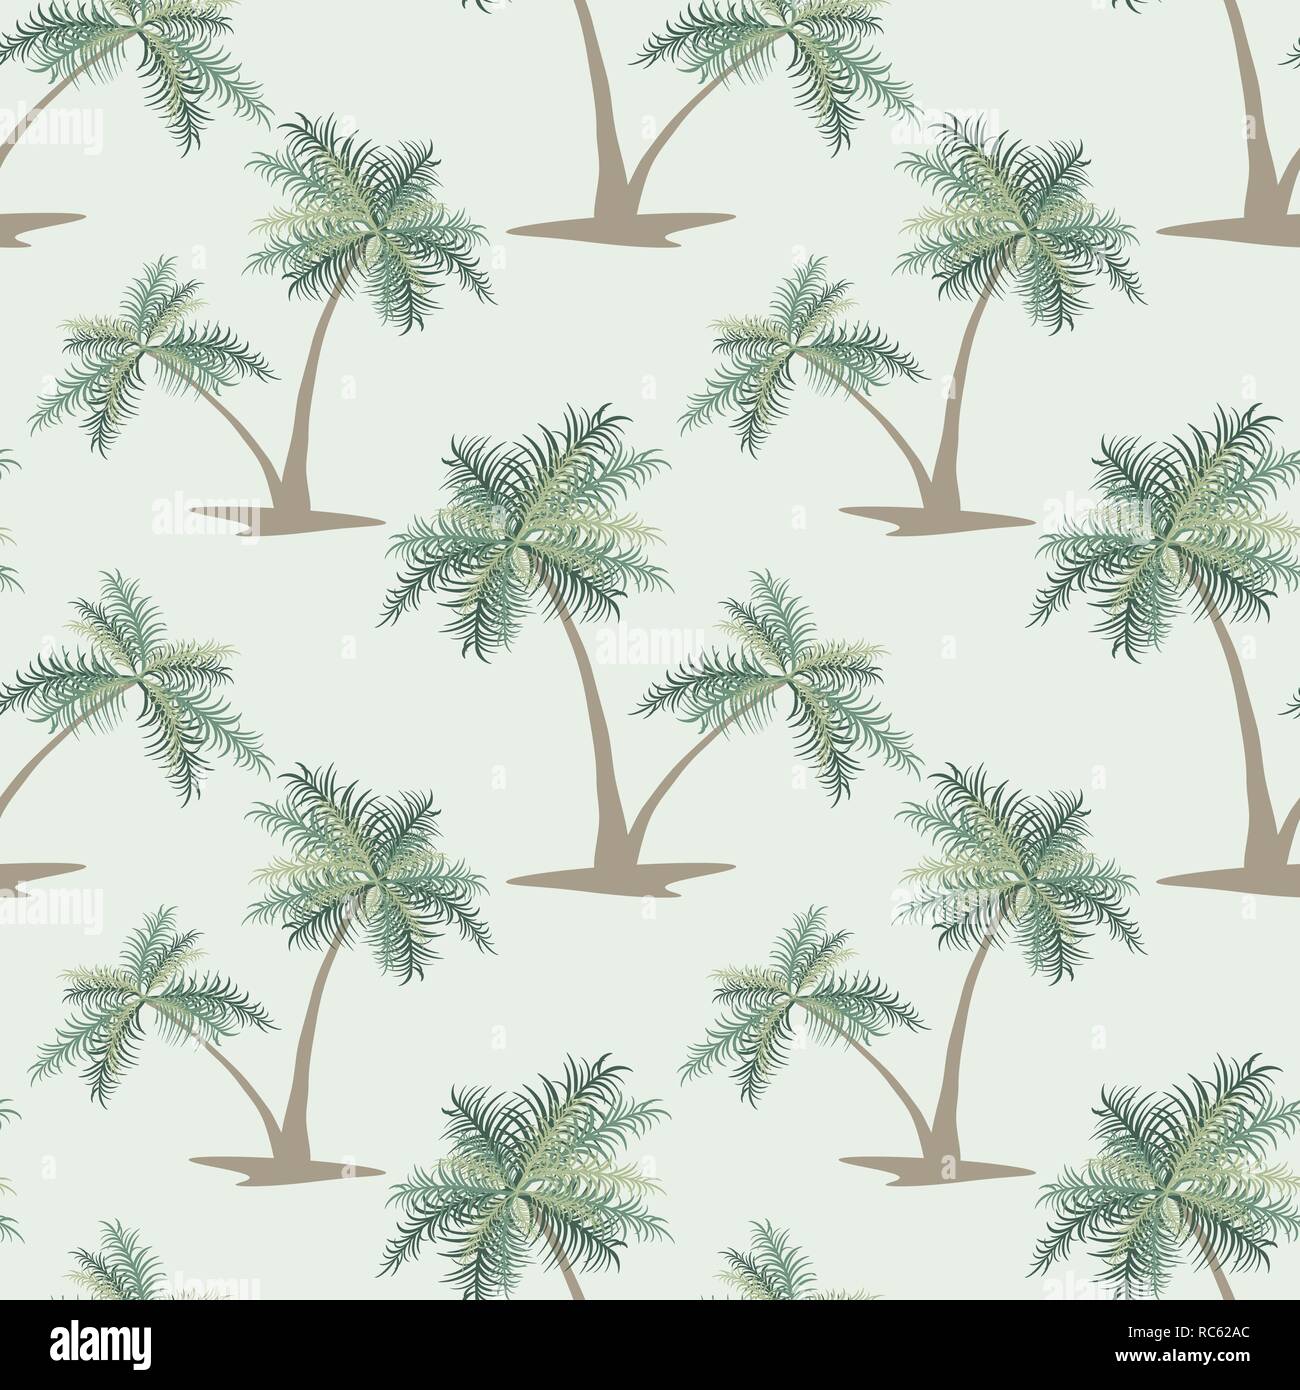 Vert transparent fond tropical avec des palmiers Banque D'Images